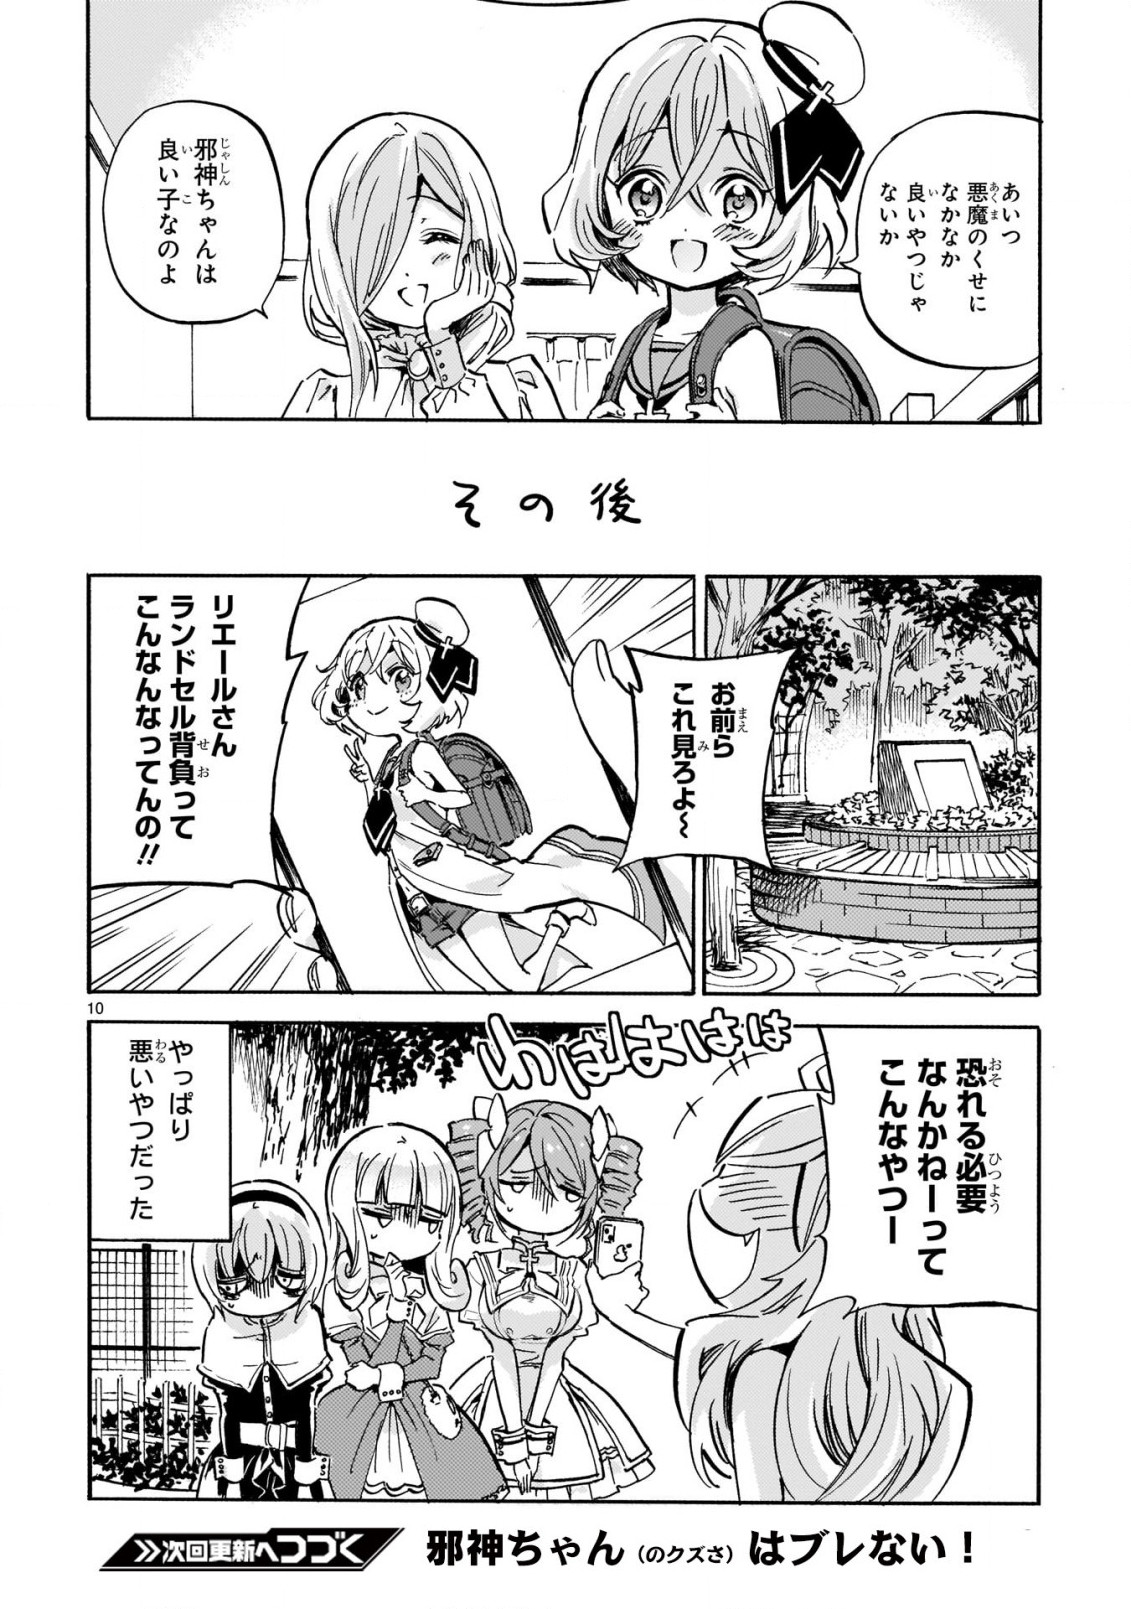 Jashin-chan Dropkick - Chapter 218 - Page 10